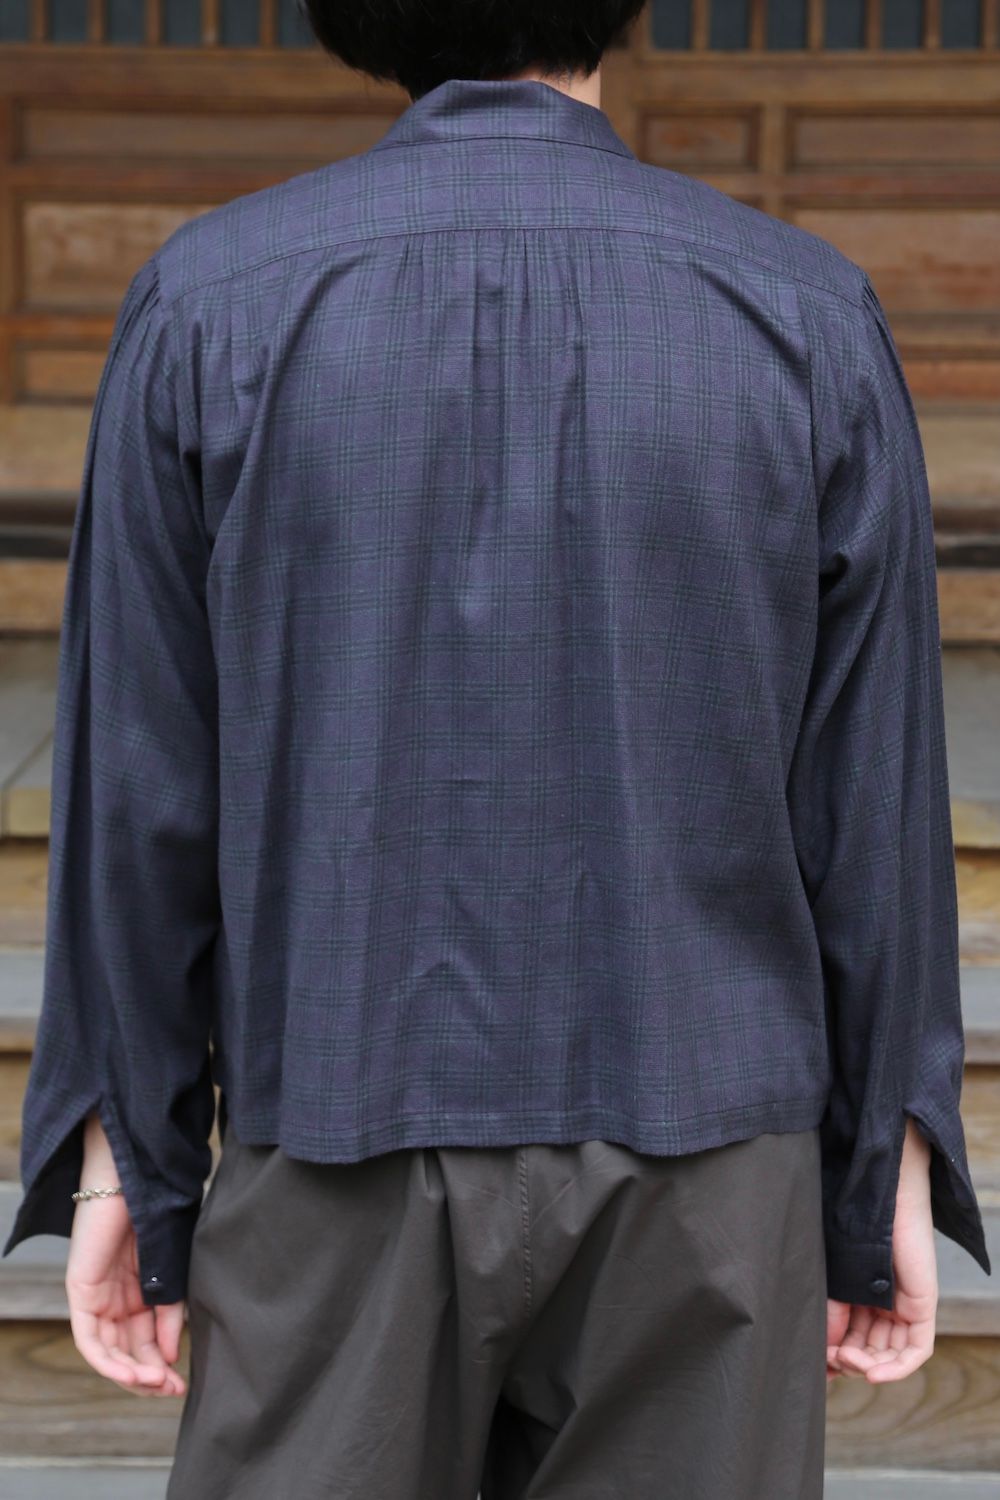 MATSUFUJI Flannel Check Pleats Jacket(M213-0301) style.2021.7.3 